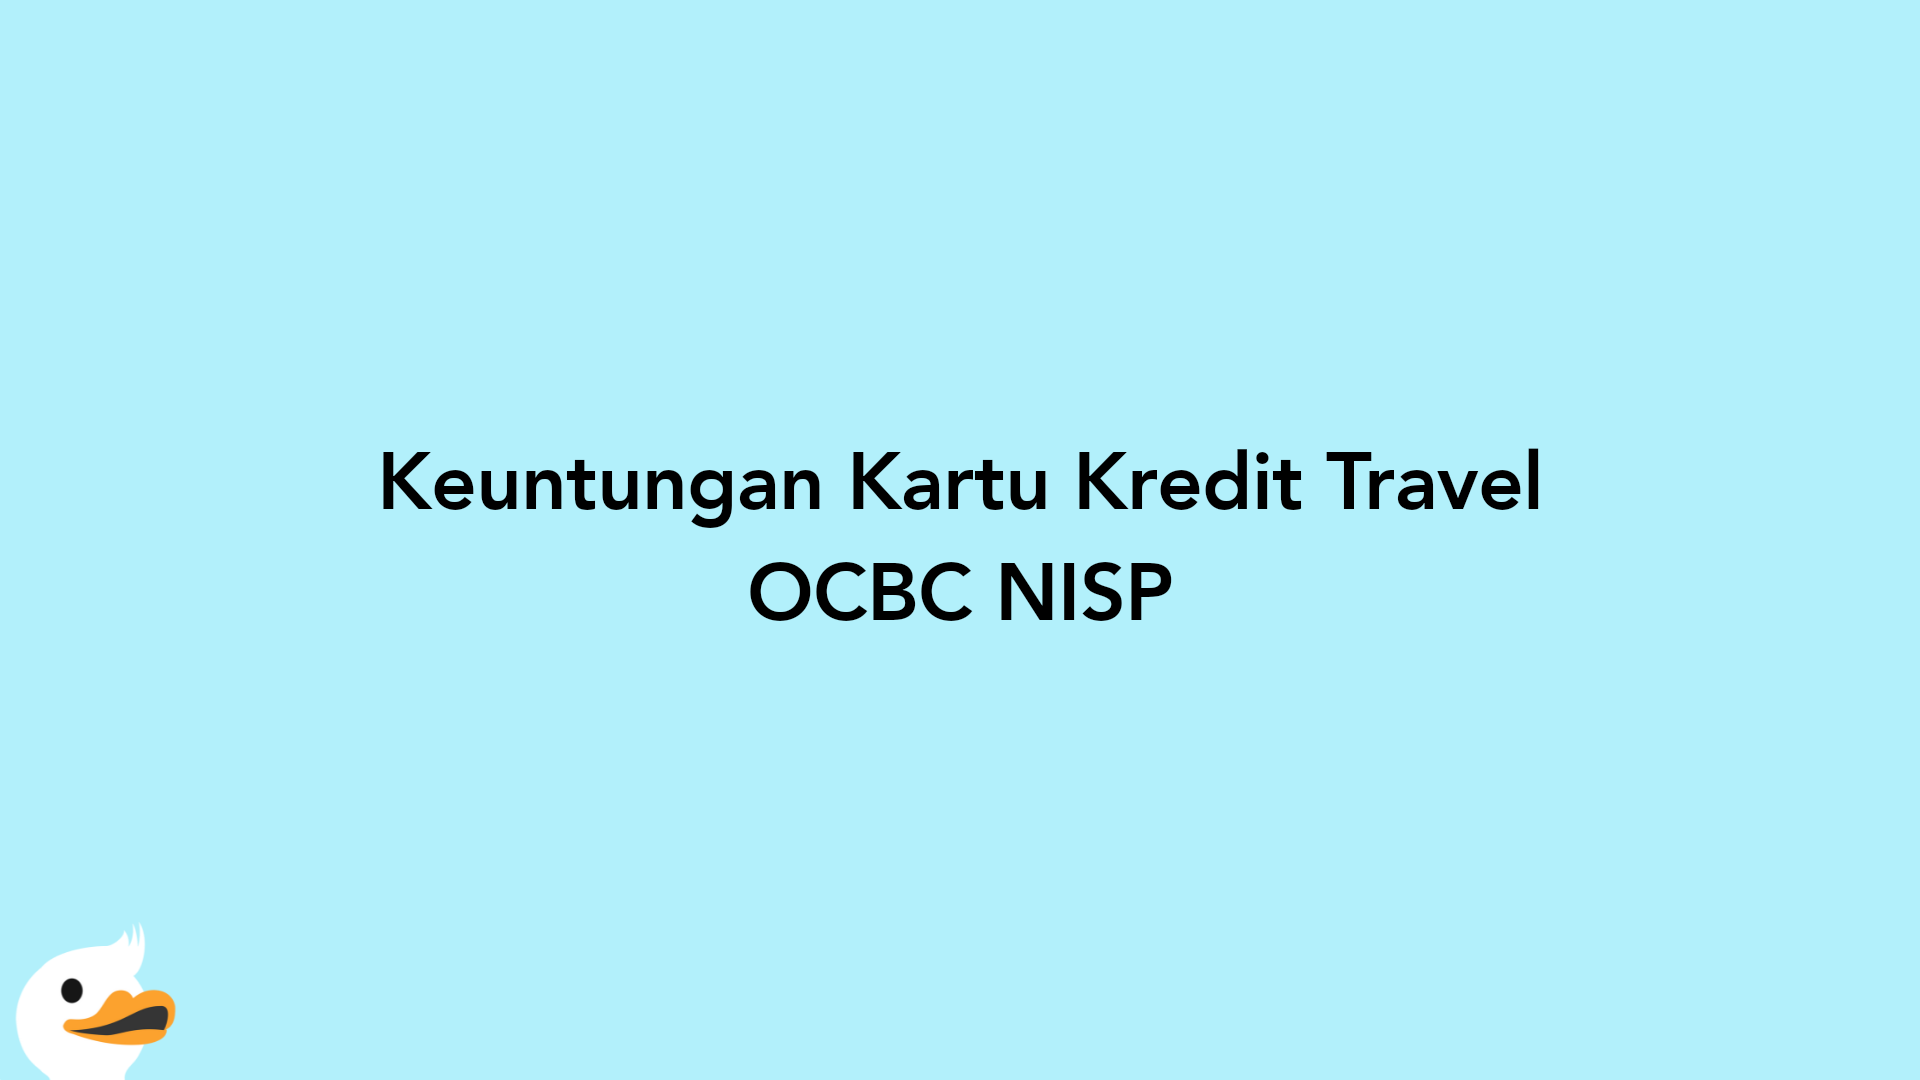 Keuntungan Kartu Kredit Travel OCBC NISP